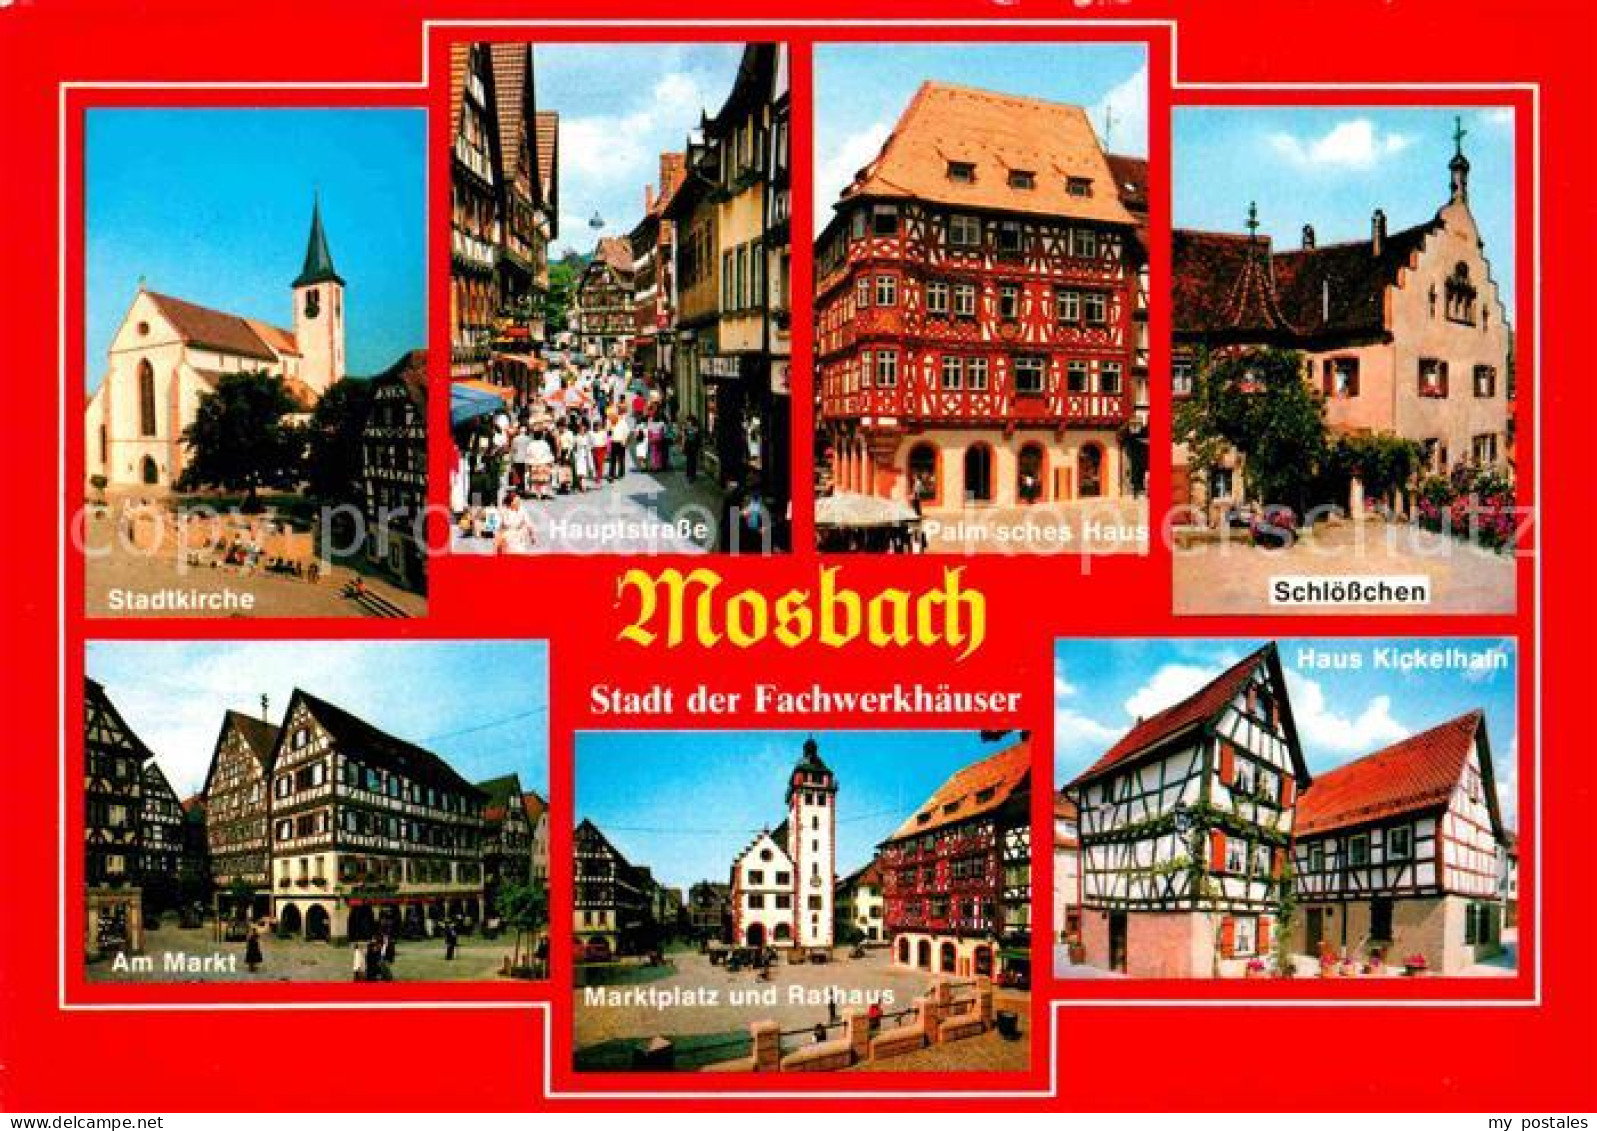 72693012 Mosbach Baden Stadtkirche Hauptstrasse Fussgaengerzone Palmsches Haus F - Mosbach